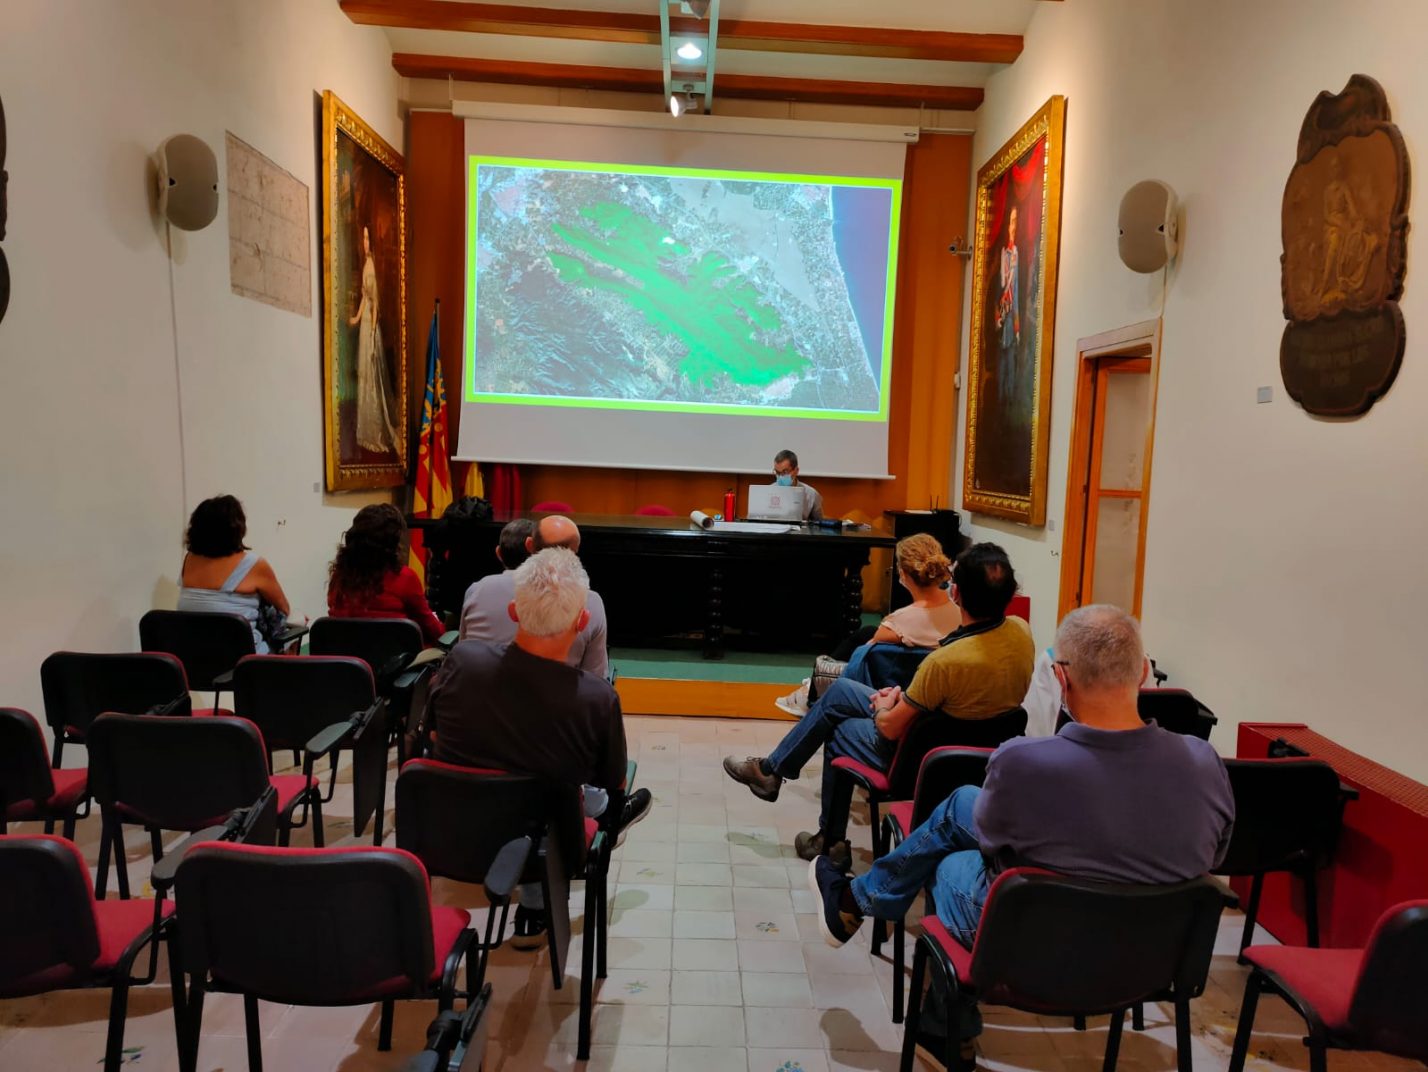 Alzira impulsa la creación de un consorcio de seis pueblos para la gestión y la protección en común de la serra de Corbera i de les Agulles